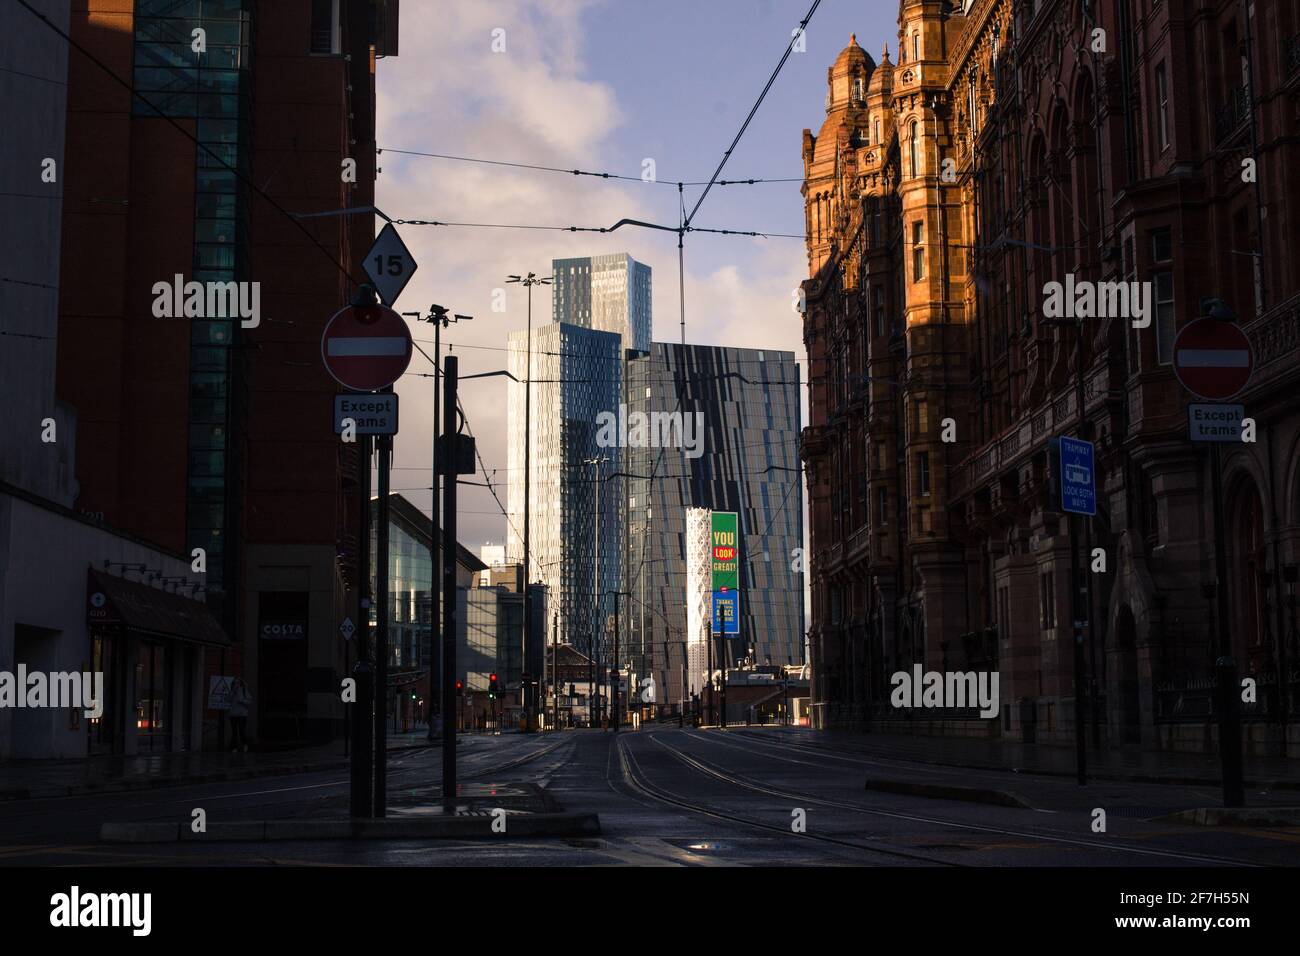 La vista del horizonte de Manchester City durante el amanecer Por la calle más baja Mosley, incluyendo el Midland Hotel y Deansgate Torres cuadradas Foto de stock